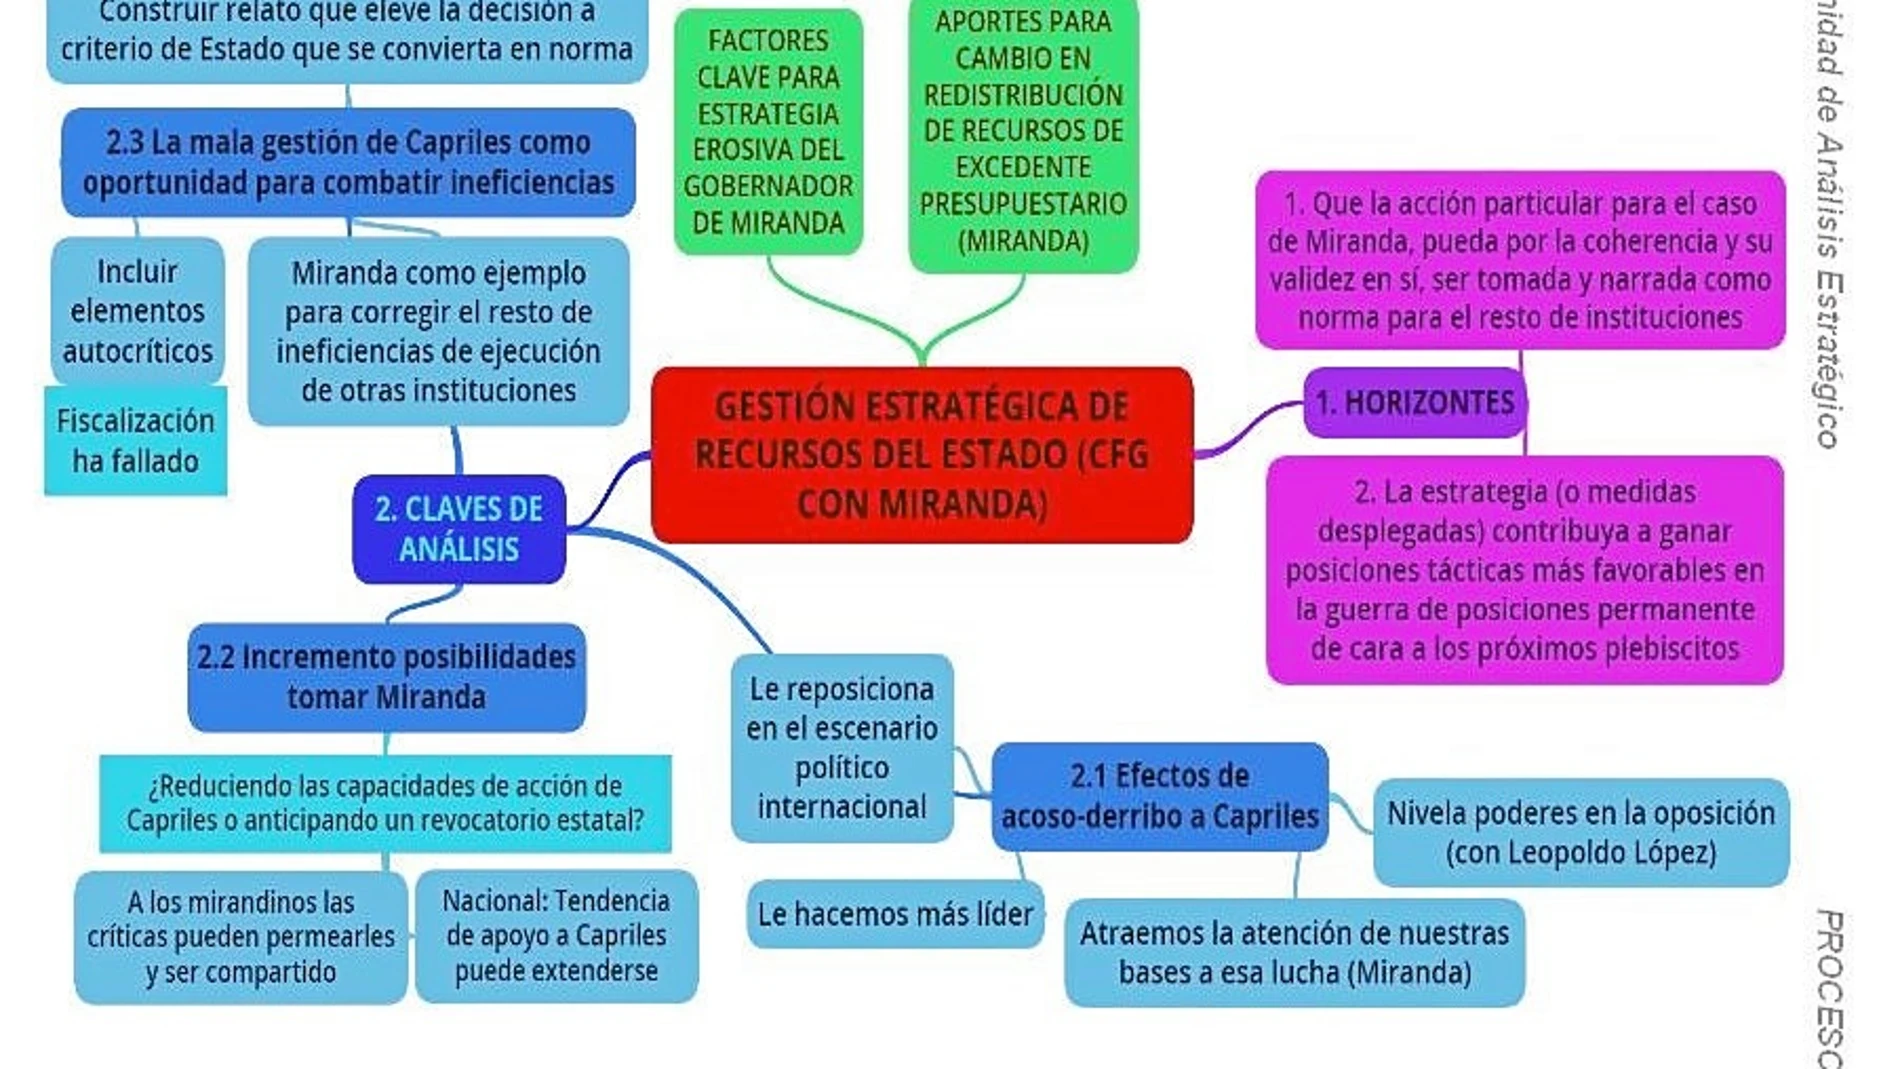 La fundación de Podemos asesora a Nicolás Maduro en este documento sobre cómo coordinar «una estrategia de acoso y derribo con amplio despliegue mediático contra Capriles», entonces líder de la oposición democrática en Venezuela